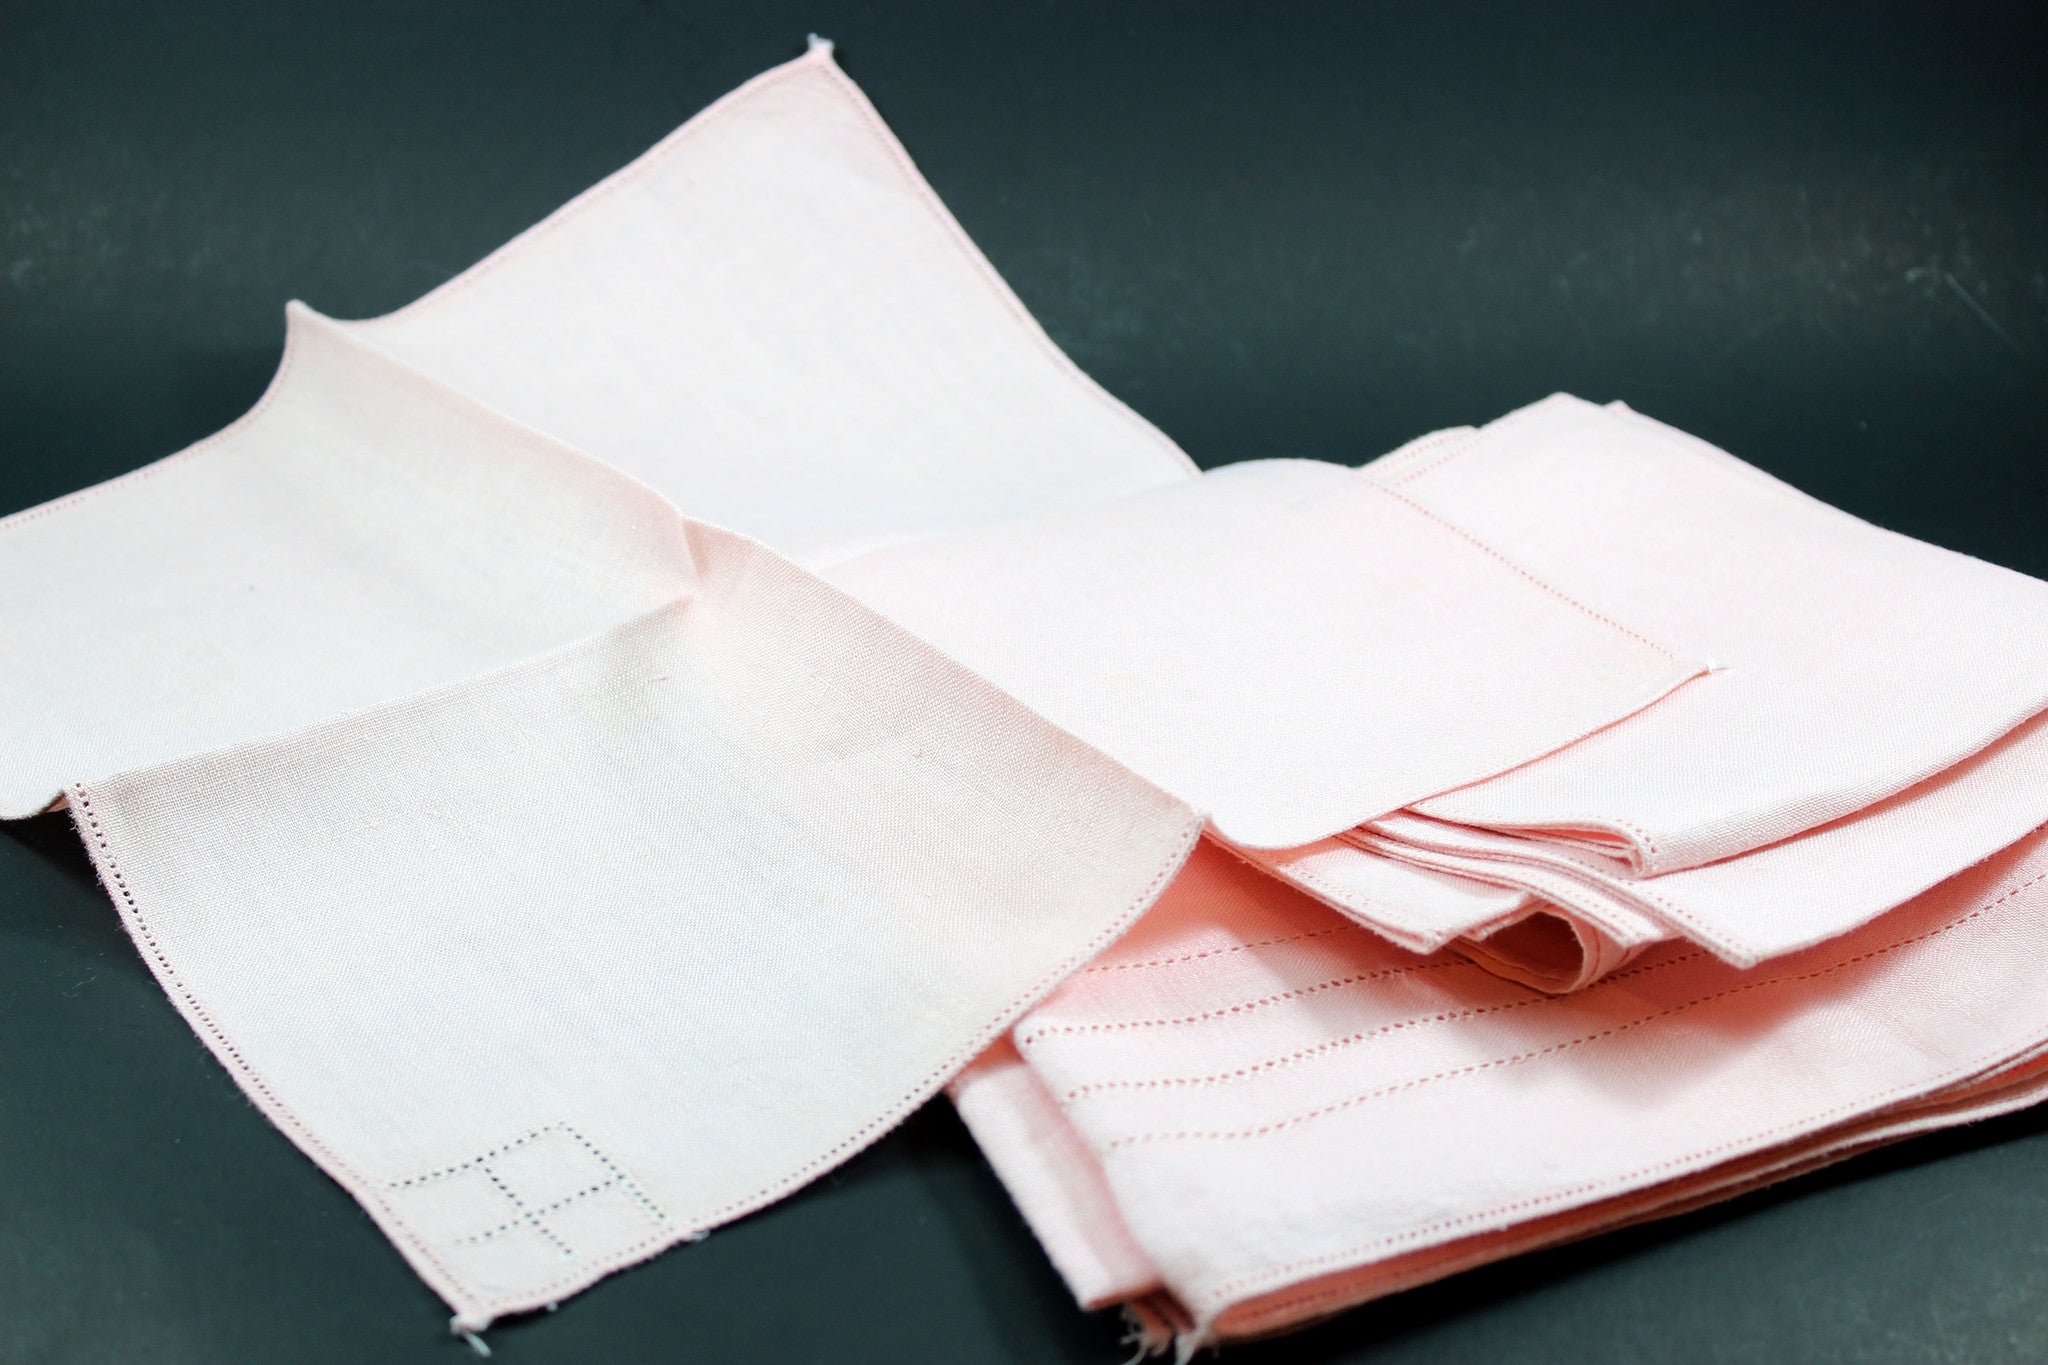 Irish Linen, Pink Bridge Set with Tea Towels